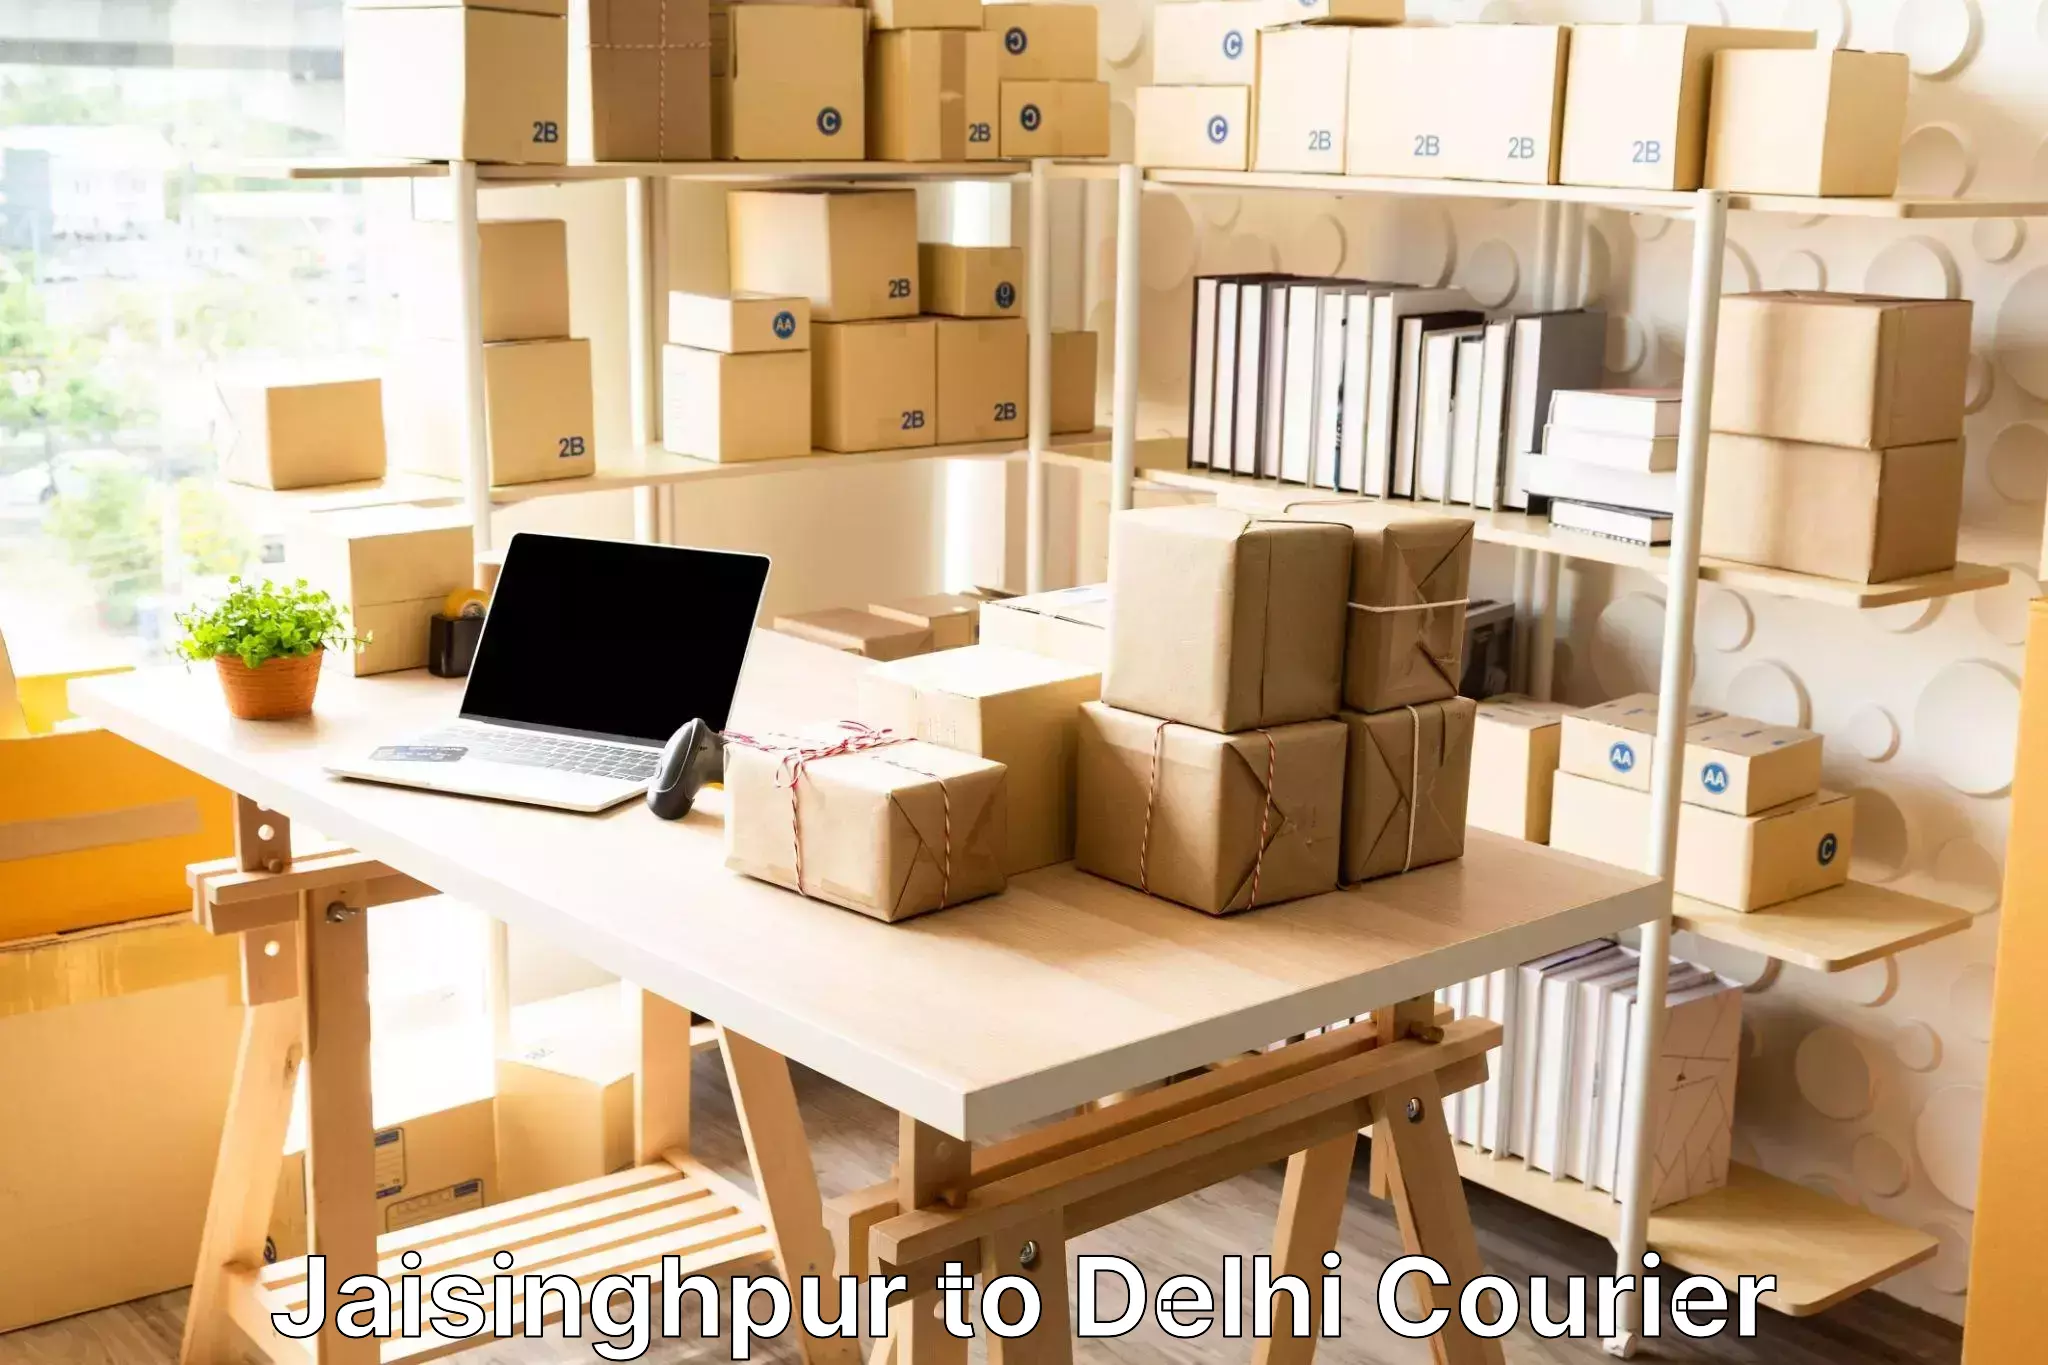 Baggage courier logistics Jaisinghpur to Jhilmil